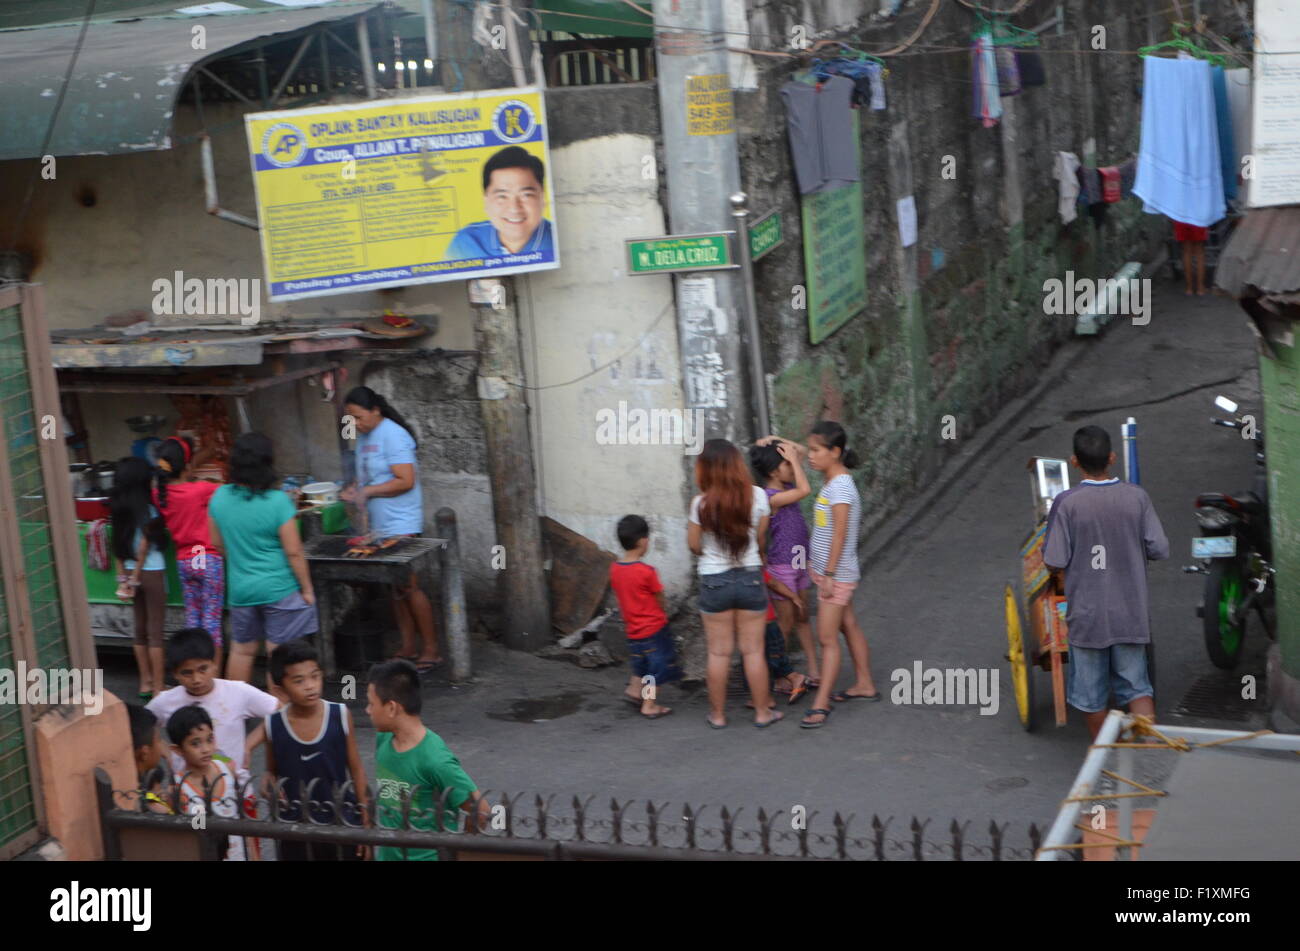 M.Dela Cruz, Manila.A rueCorner wherecrowds se rassemblent toguest thesausages étant réchauffés pour eux.au-dessus de themthe local politicien Banque D'Images